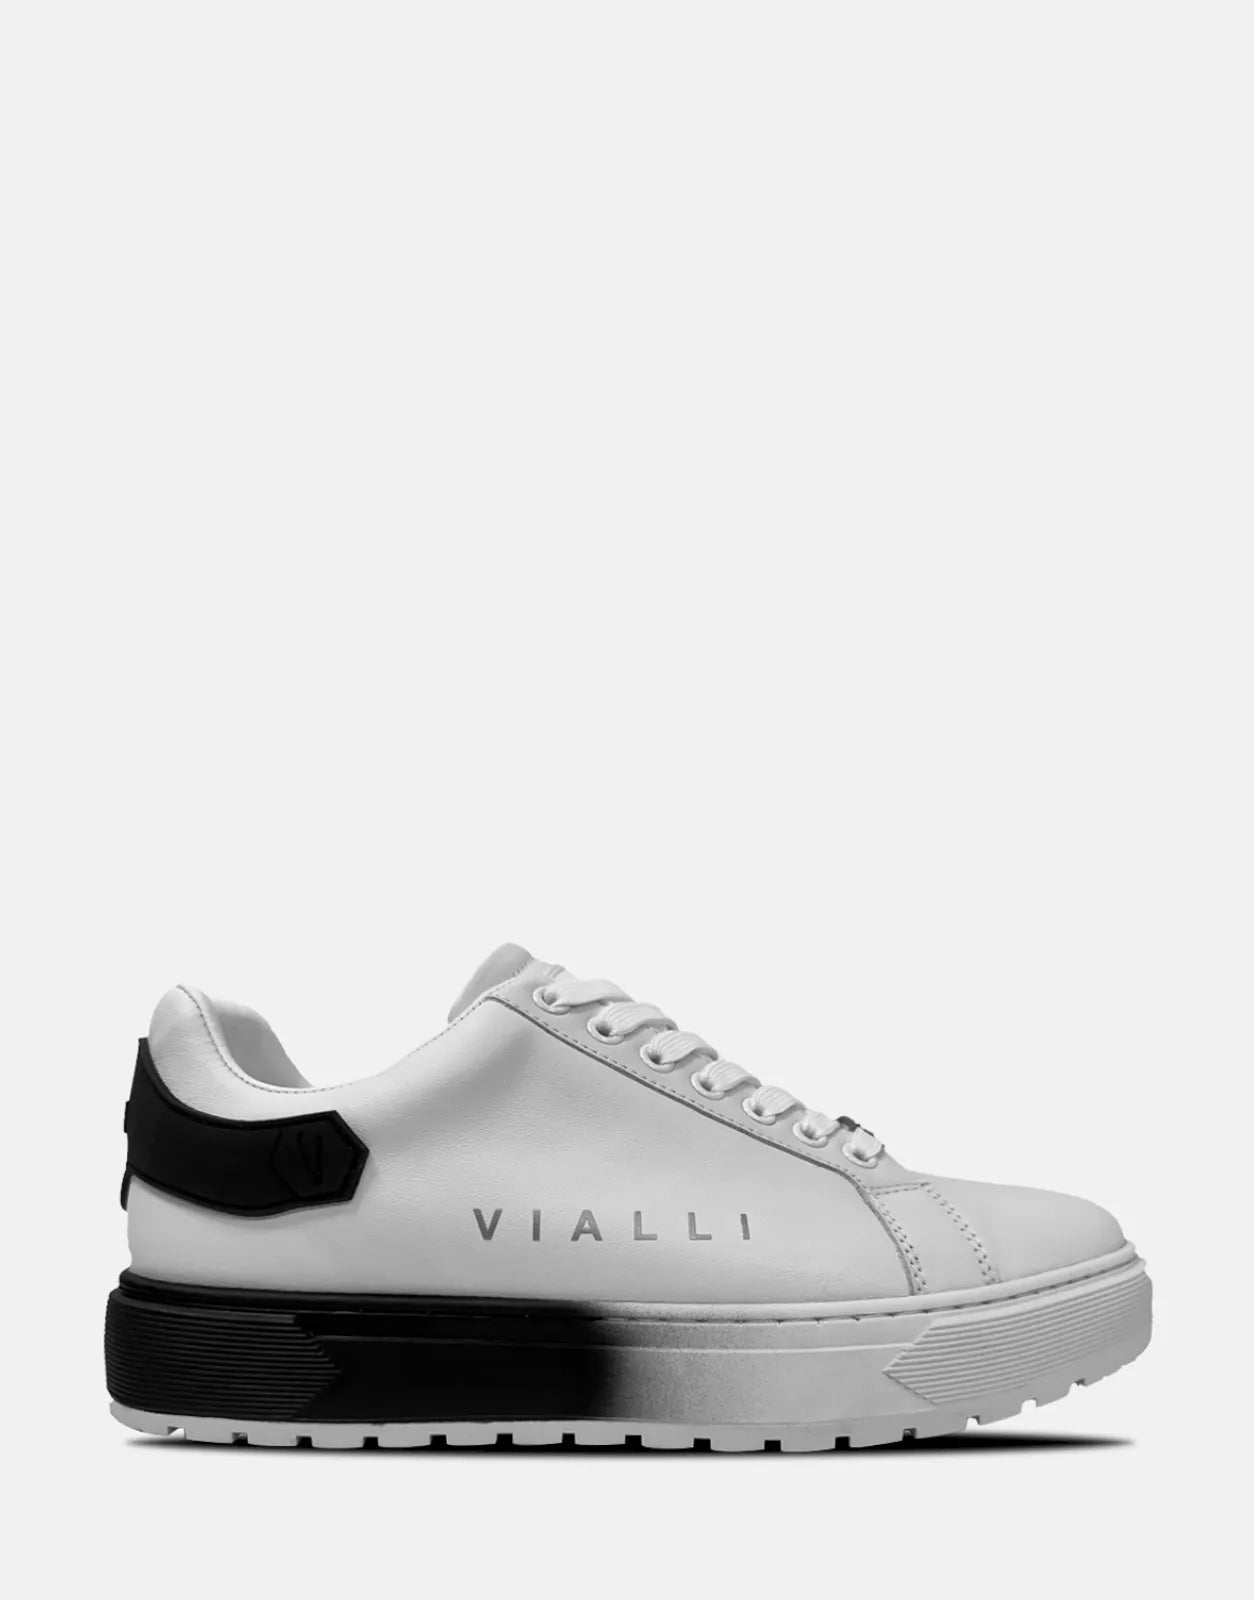 Vialli Bonucci White Sneakers - Subwear